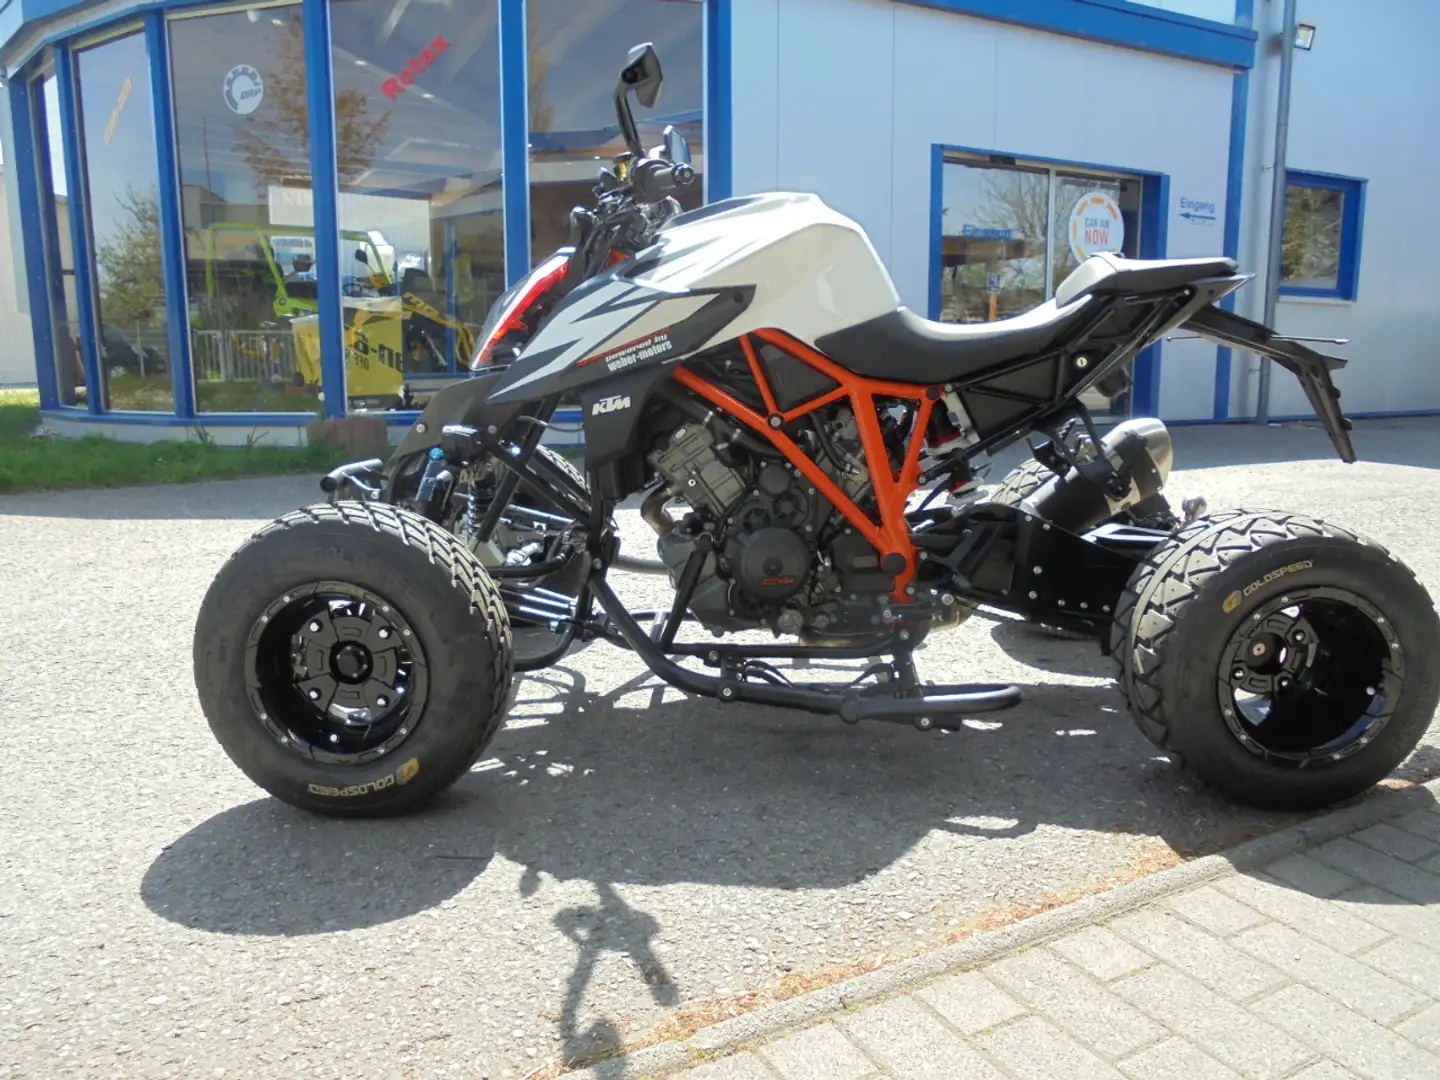 KTM 1290 Super Duke R Quad/ATV in Schwarz neu in Eppingen Rohrbach für €  35.900,-